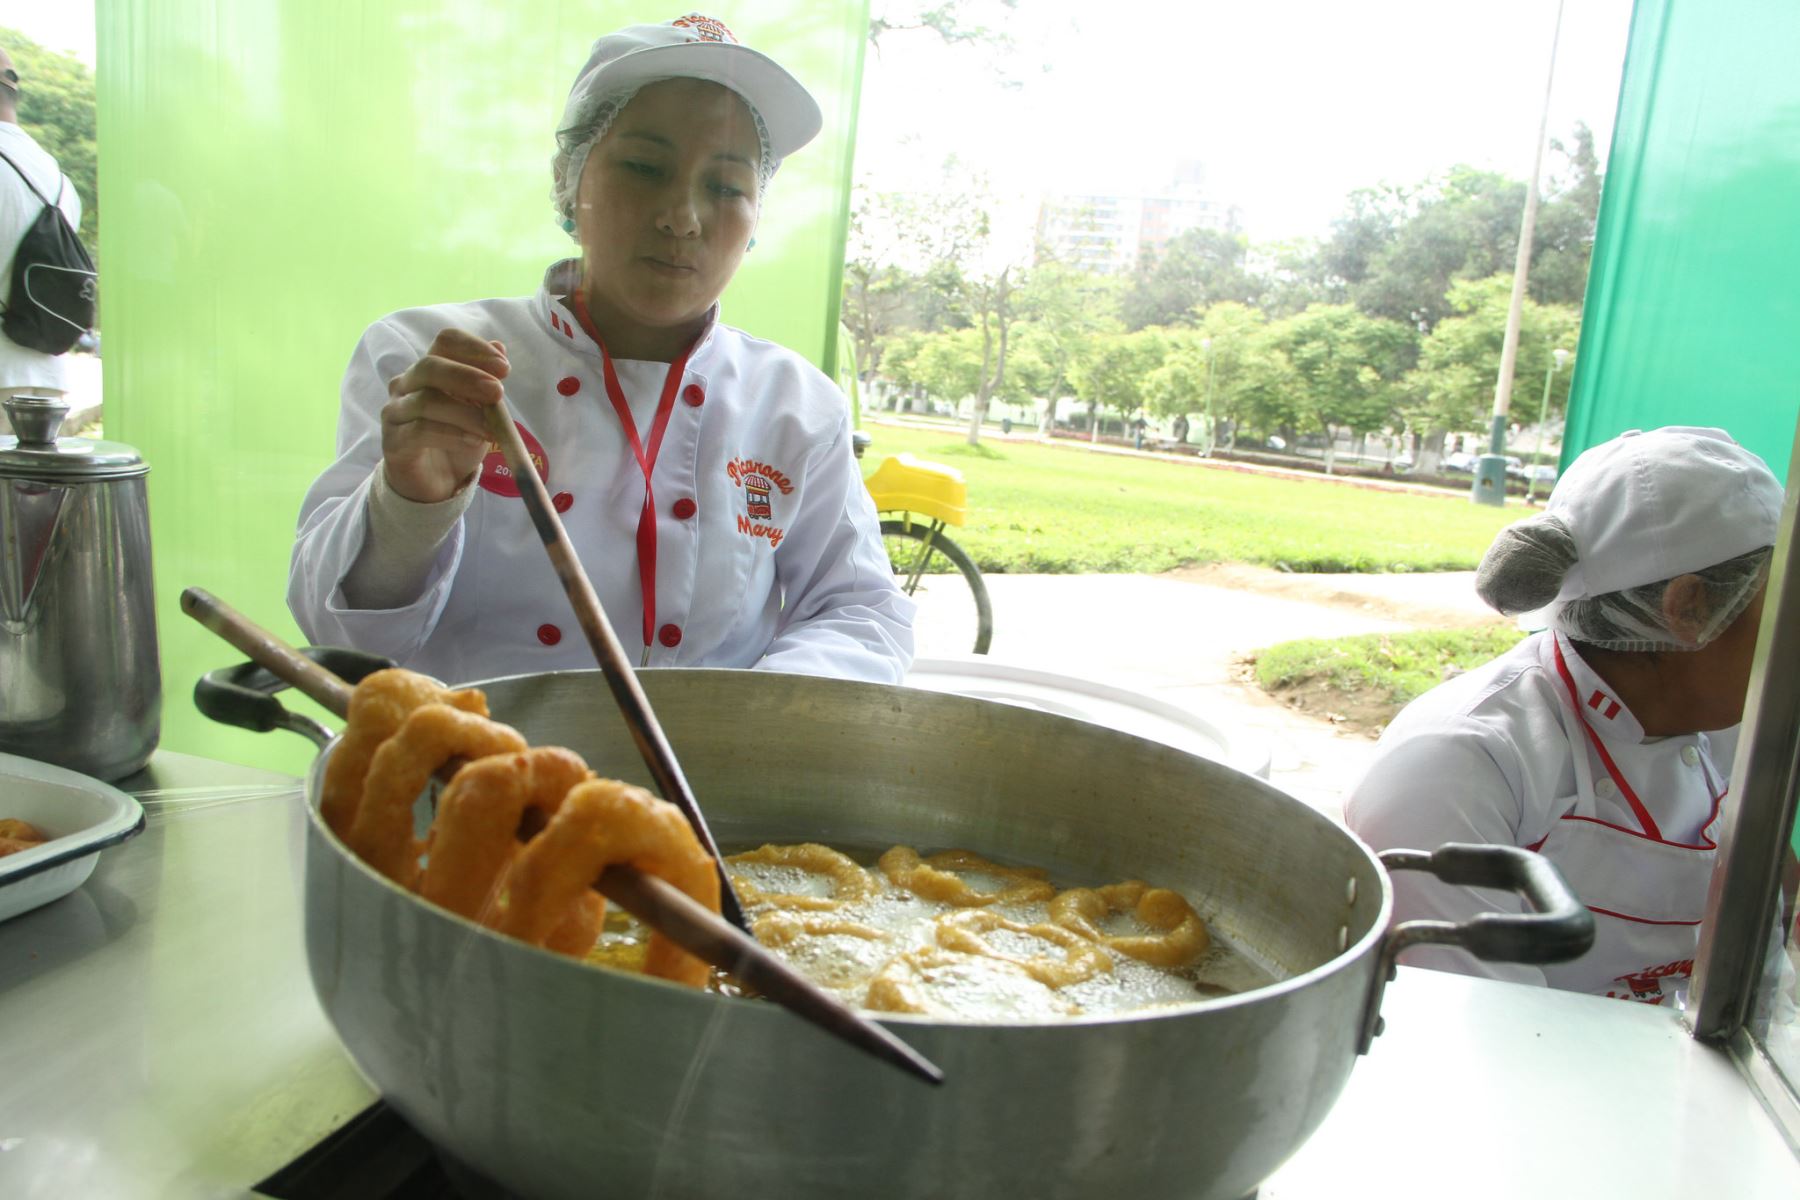 Deliciosos potajes llegarán a Mistura 2015 en tradicionales carretillas |  Noticias | Agencia Peruana de Noticias Andina